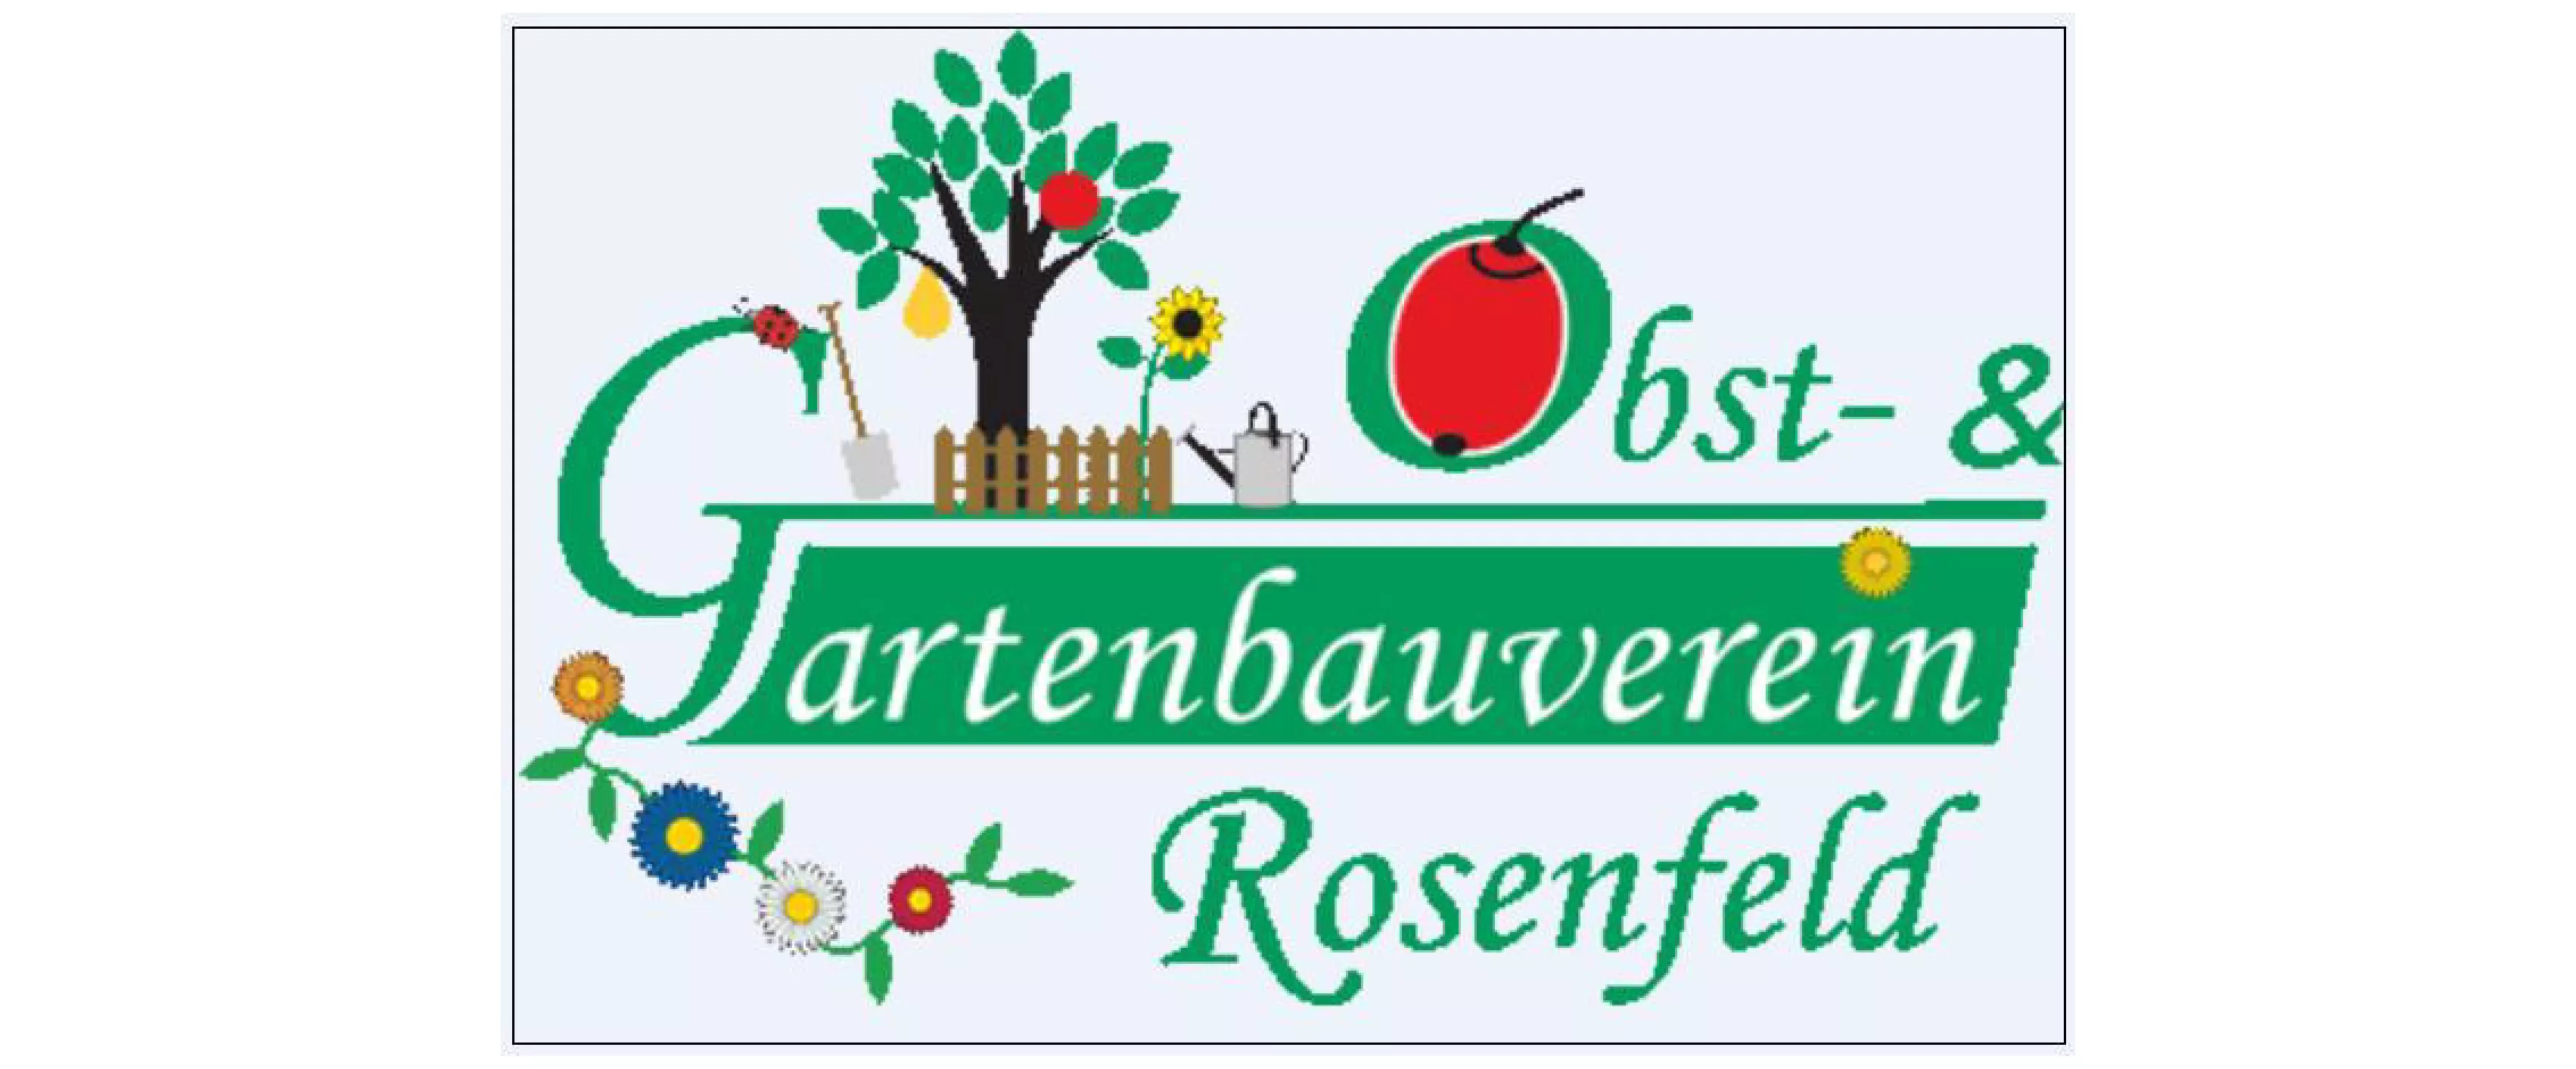 Obst- und Gartenbauverein Rosenfeld